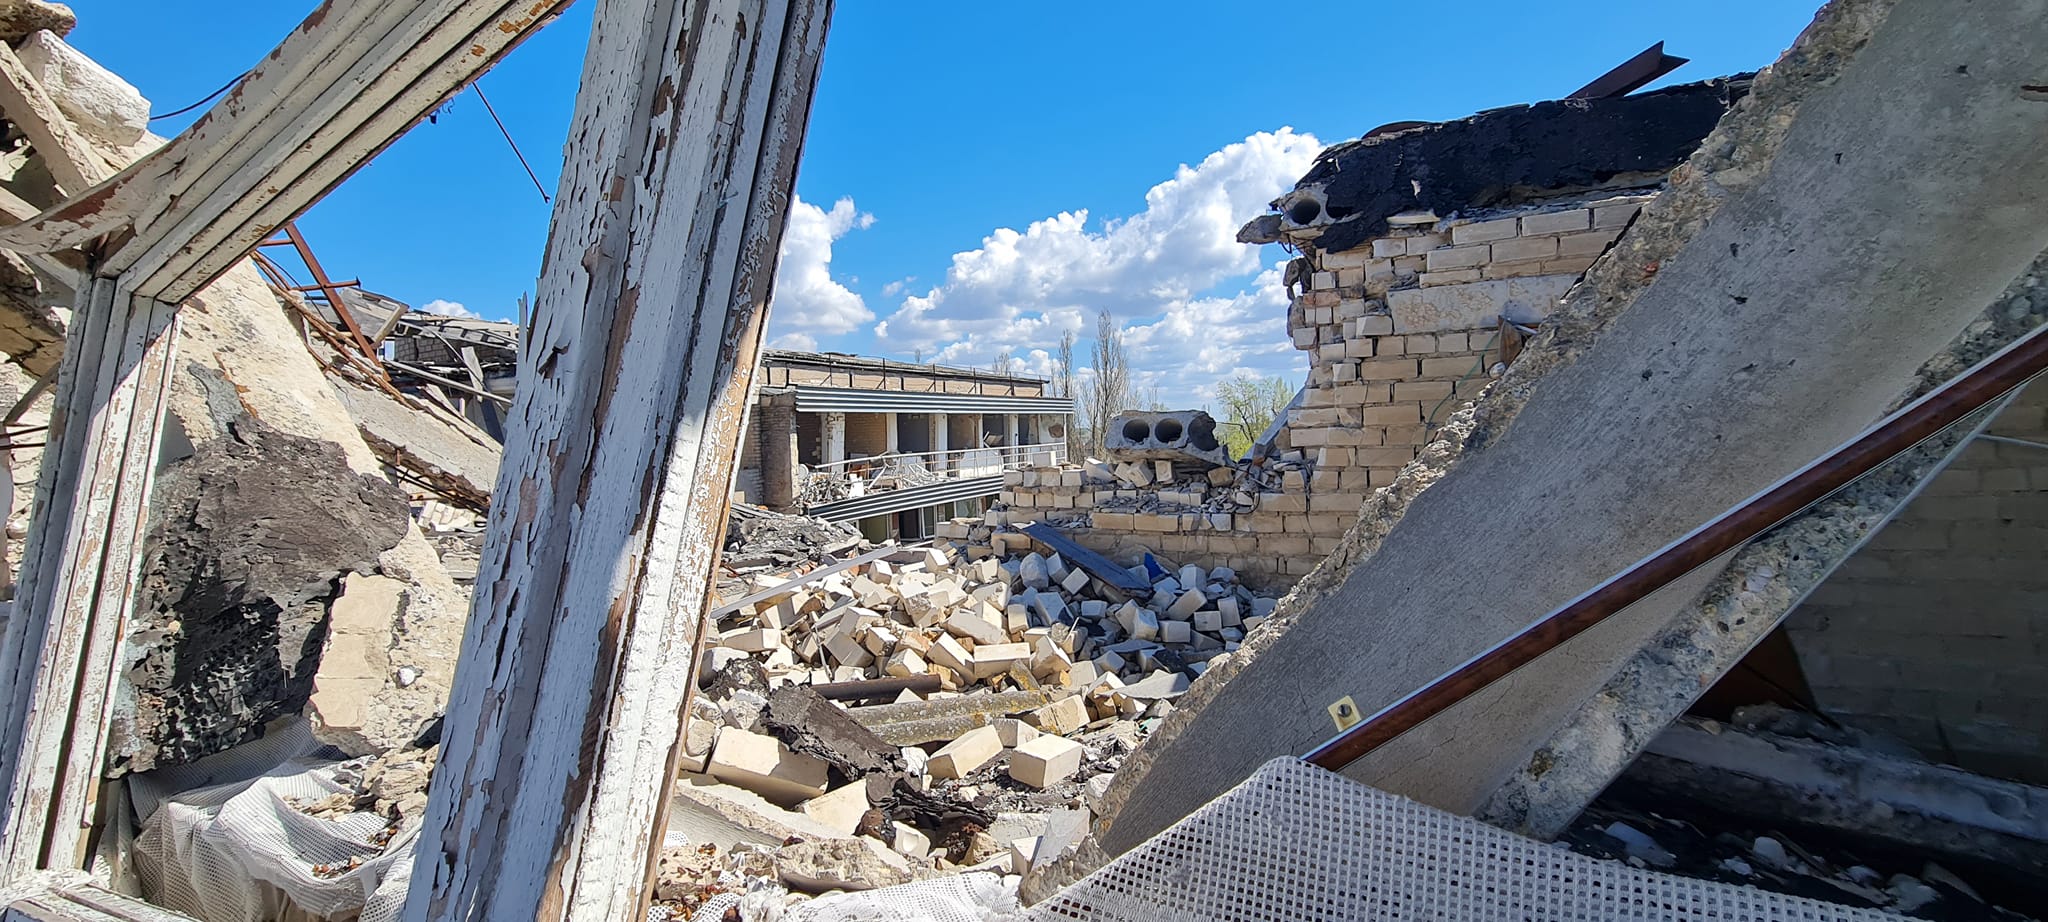 Херсонський Гідропарк: знищений мостоперехід та розбита спортивна школа – фотоогляд